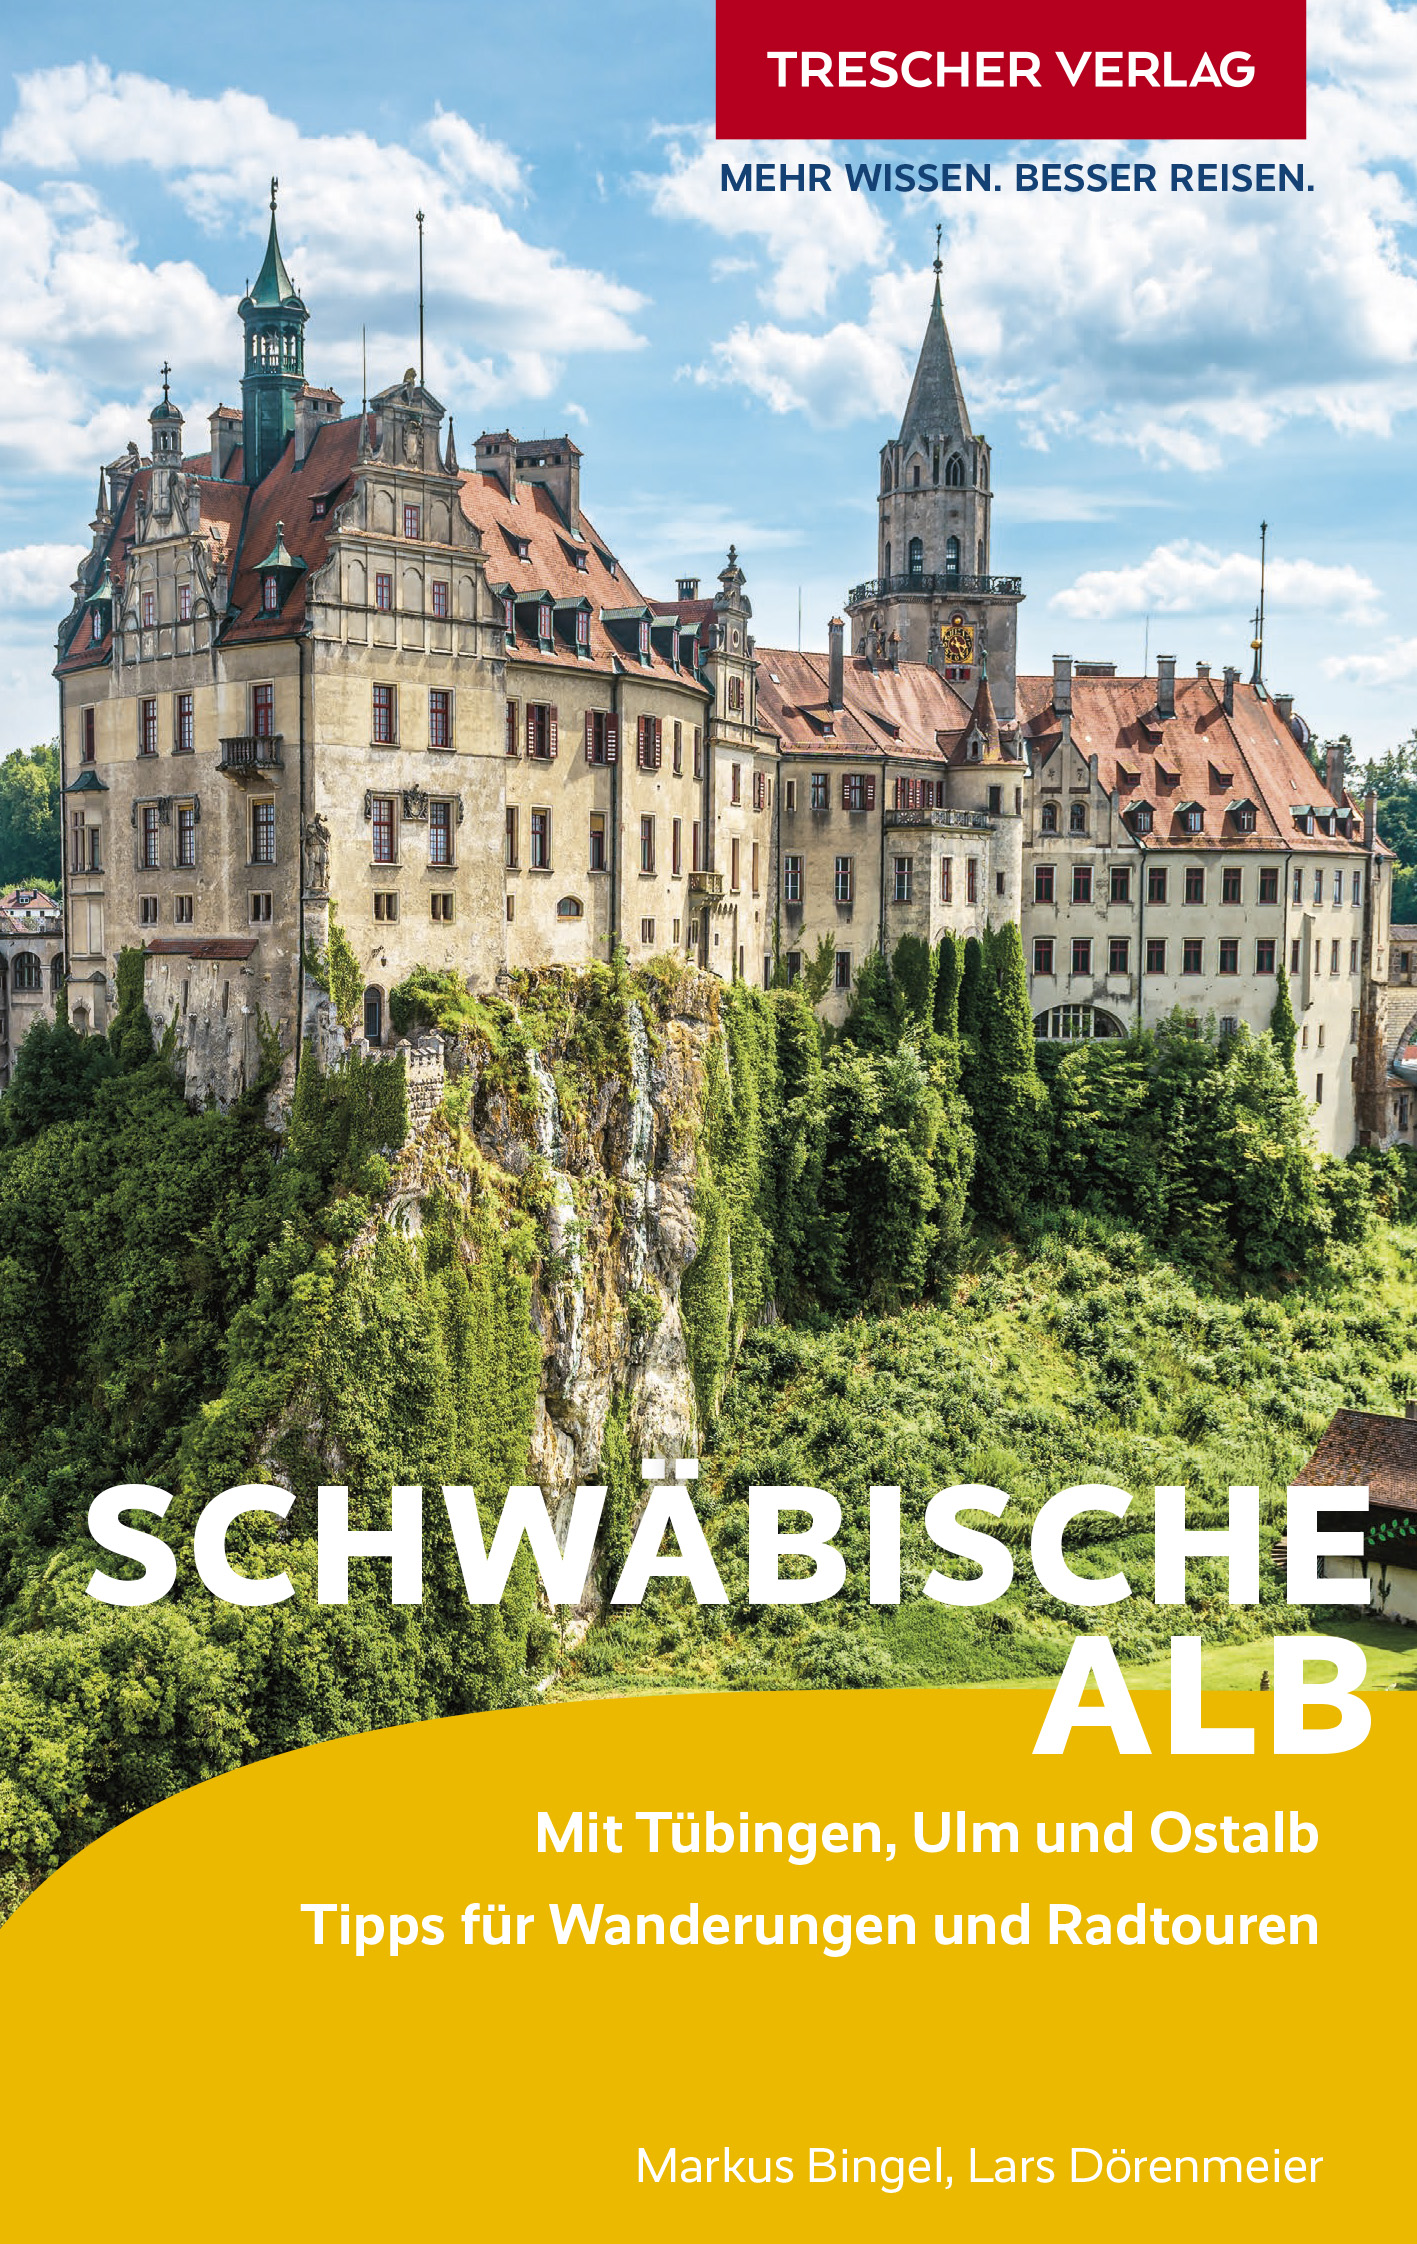 Cover Trescher-Reiseführer Schwaebische Alb